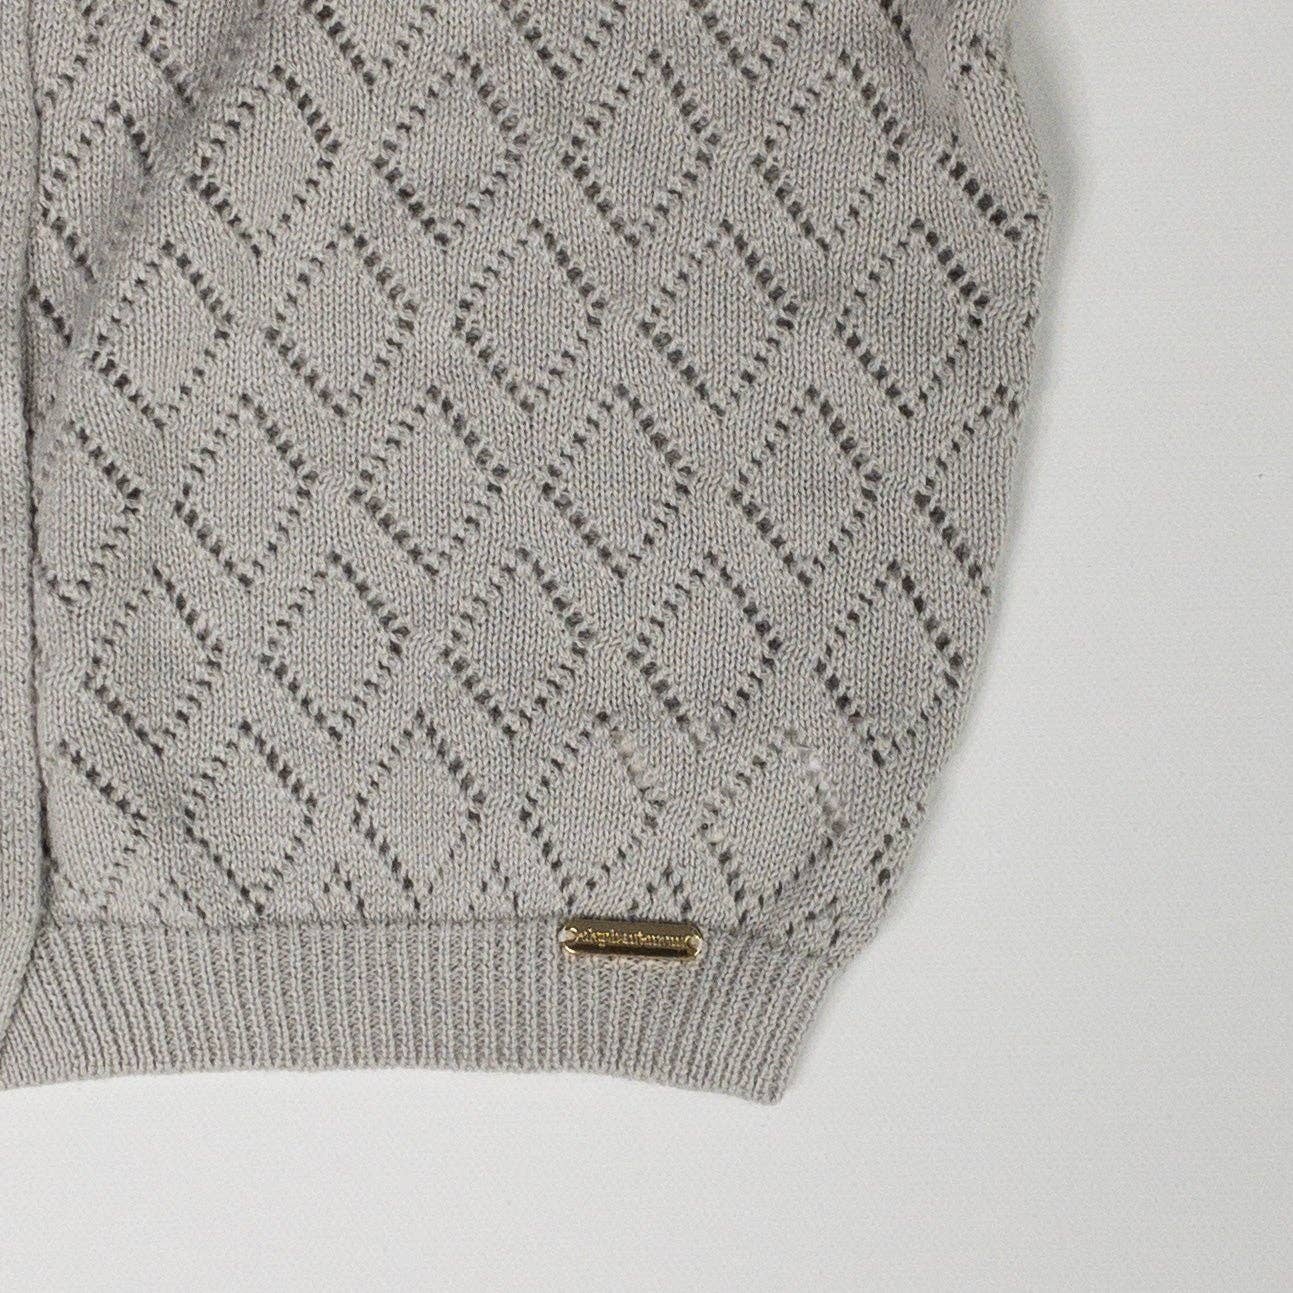 Diamond Gray Sweater Baby: 0-6M / Diamond Gray